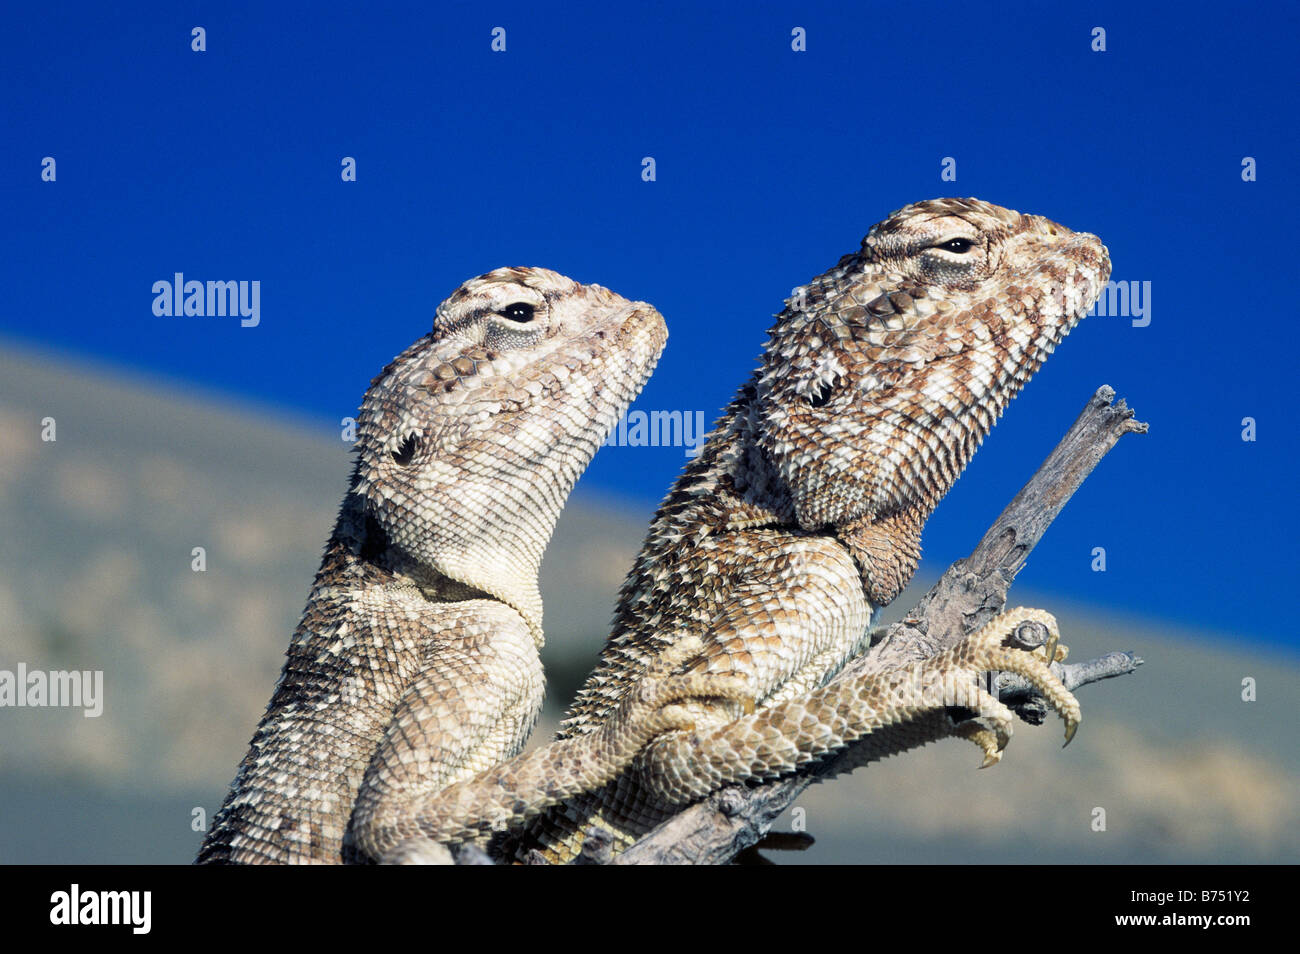 Jayakar's Agama Lizards, Bahrain, Arabian Gulf Stock Photo